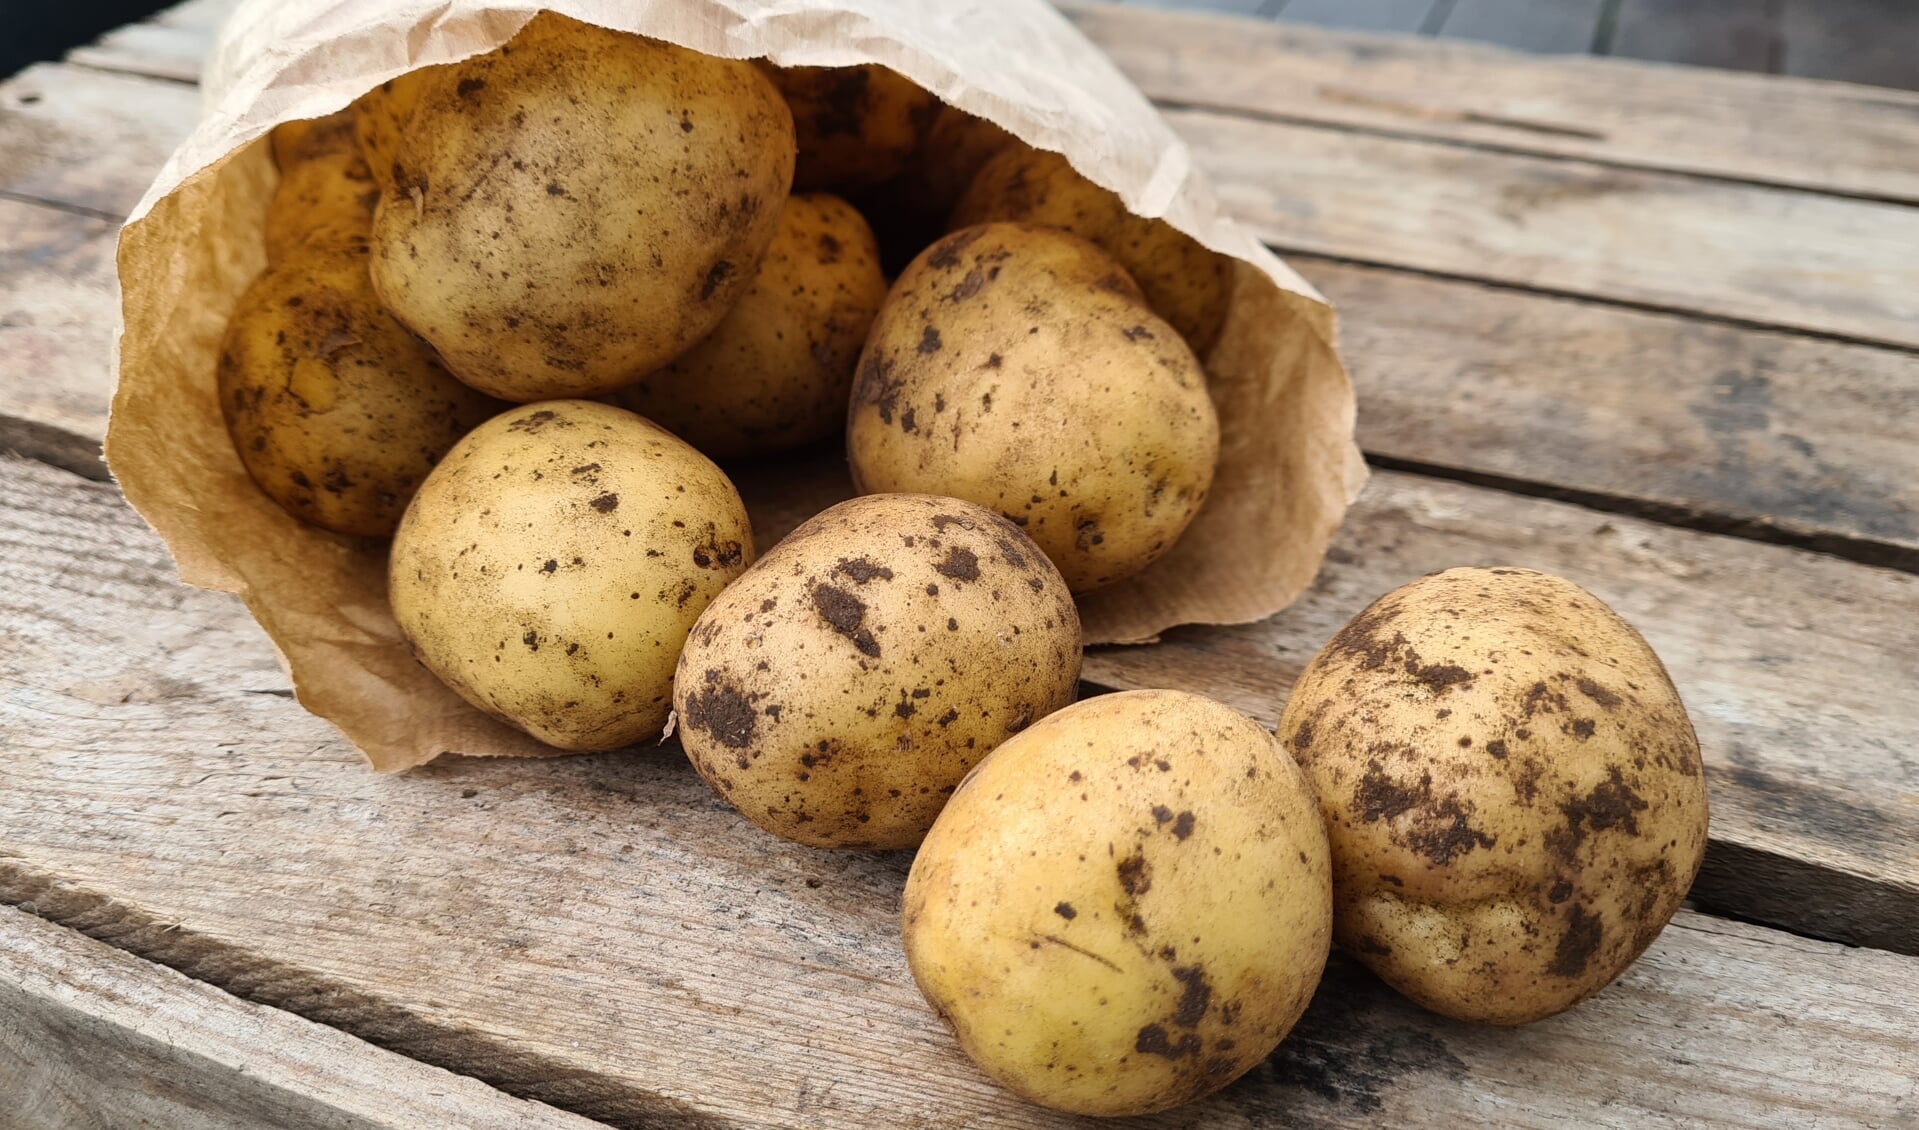 Kartofler er sunde, selv om de seneste års kulhydrat-forskrækkelse har været hård kost for dem.